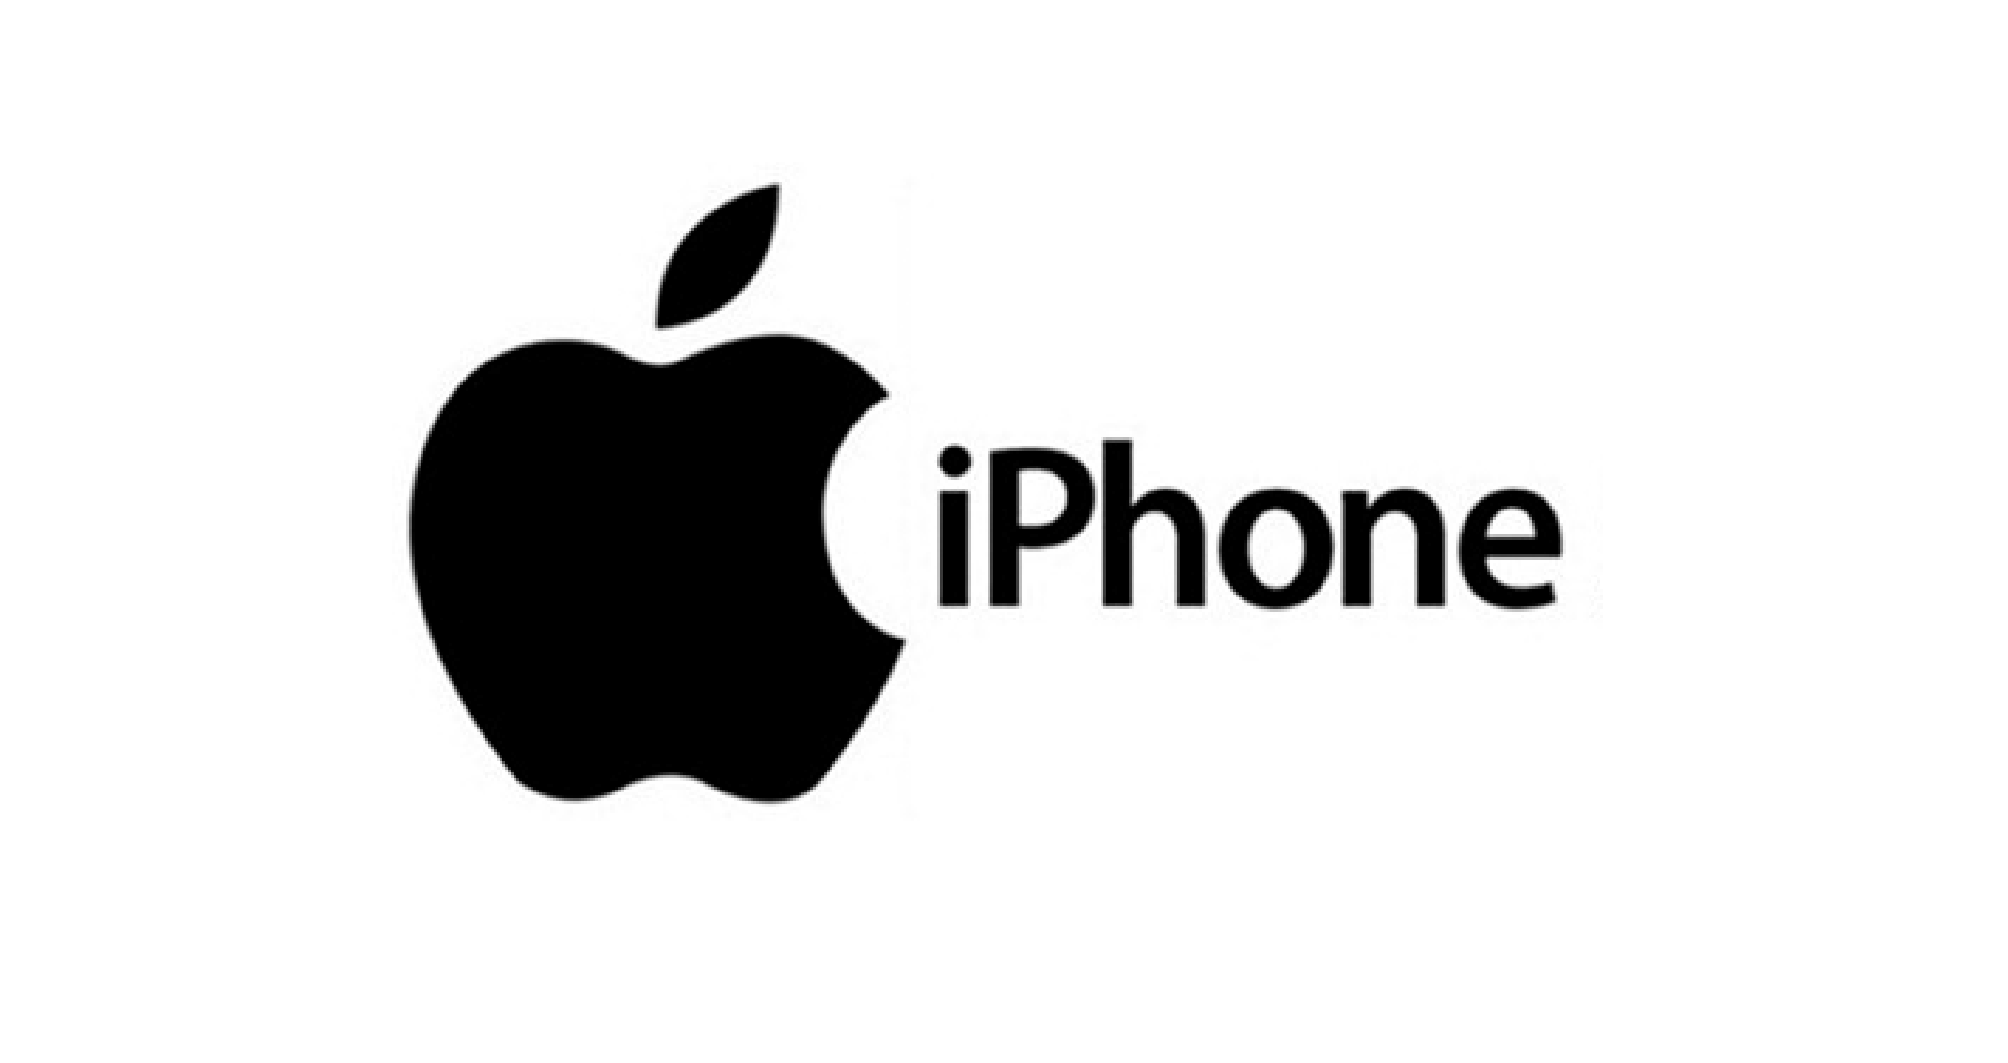 https://martinbriley.com/wp-content/uploads/2021/11/apple-iphone-logo-png-1.png